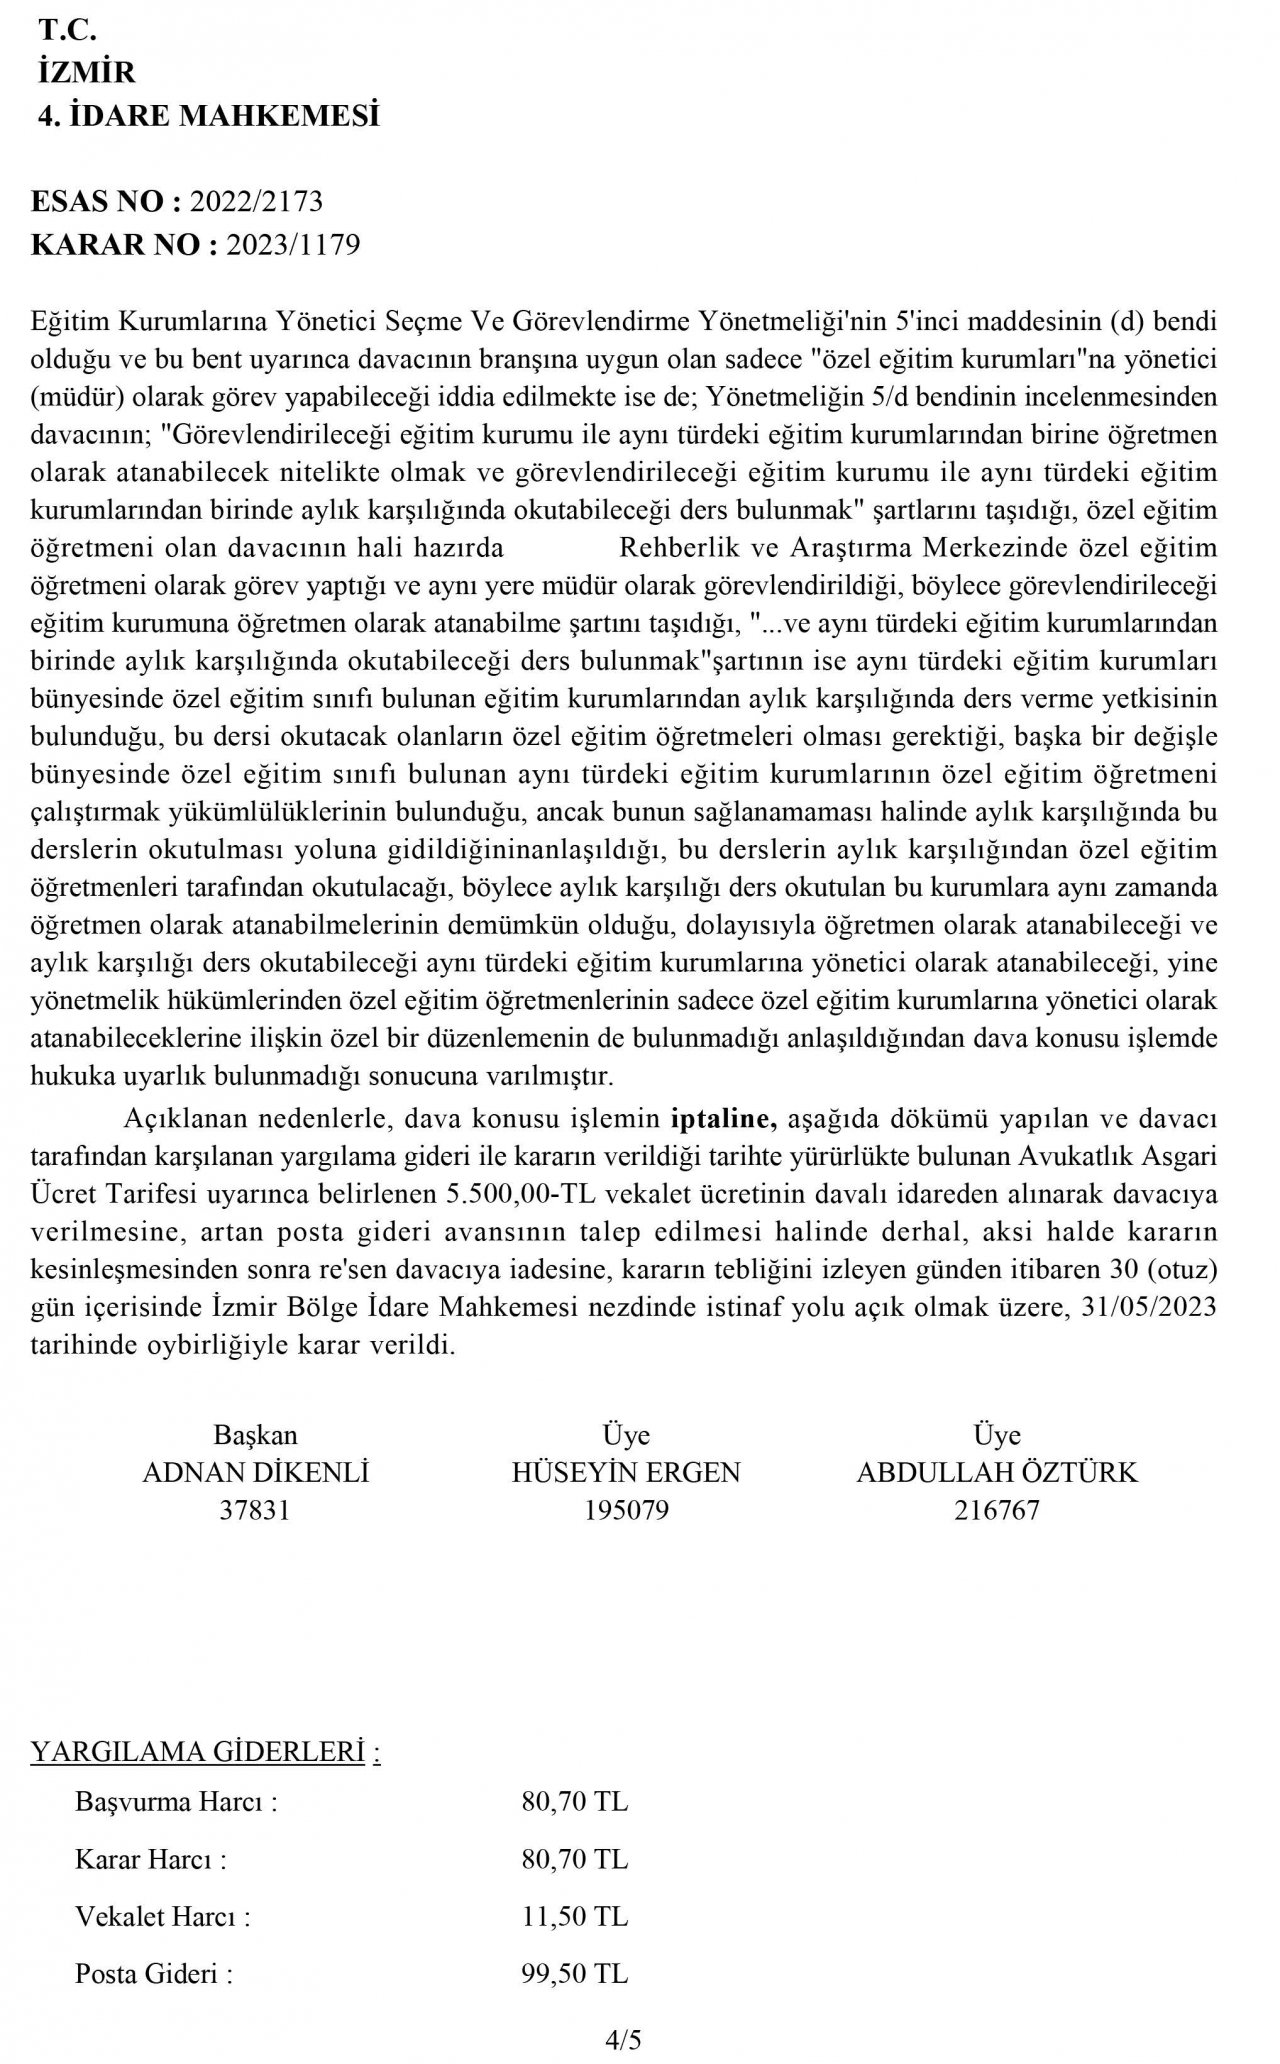 izmir-4idare-karar-2023-1179-sayfa-4.jpg